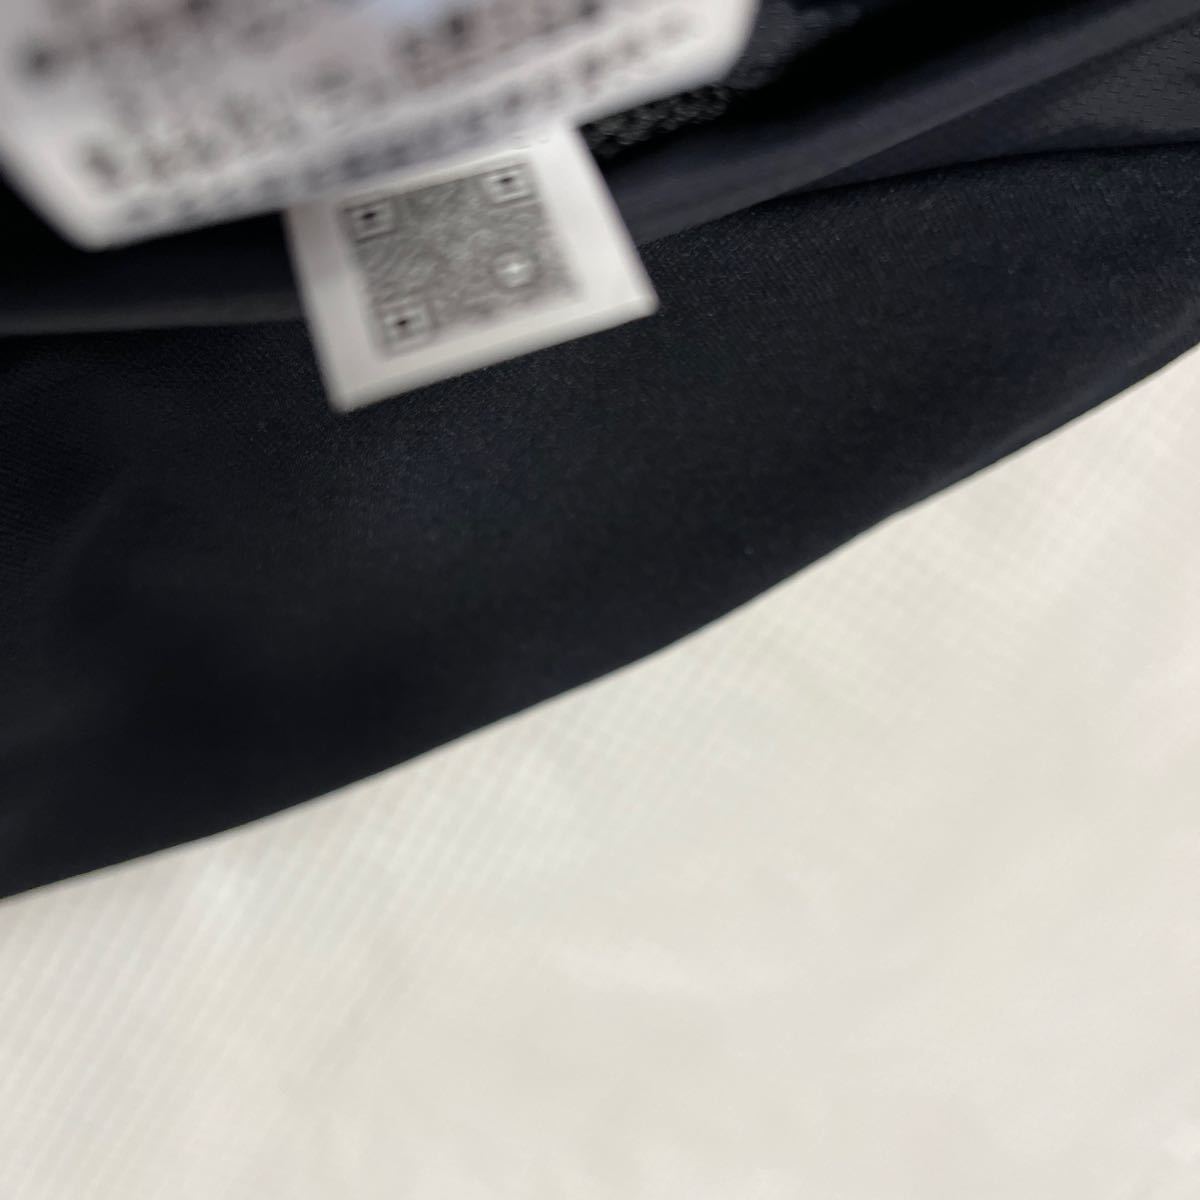  новый товар стандартный товар Pearly Gates размер 6 супер стрейч вязаный брюки-джоггеры темно синий джерси брюки тренировка одежда бесплатная доставка 